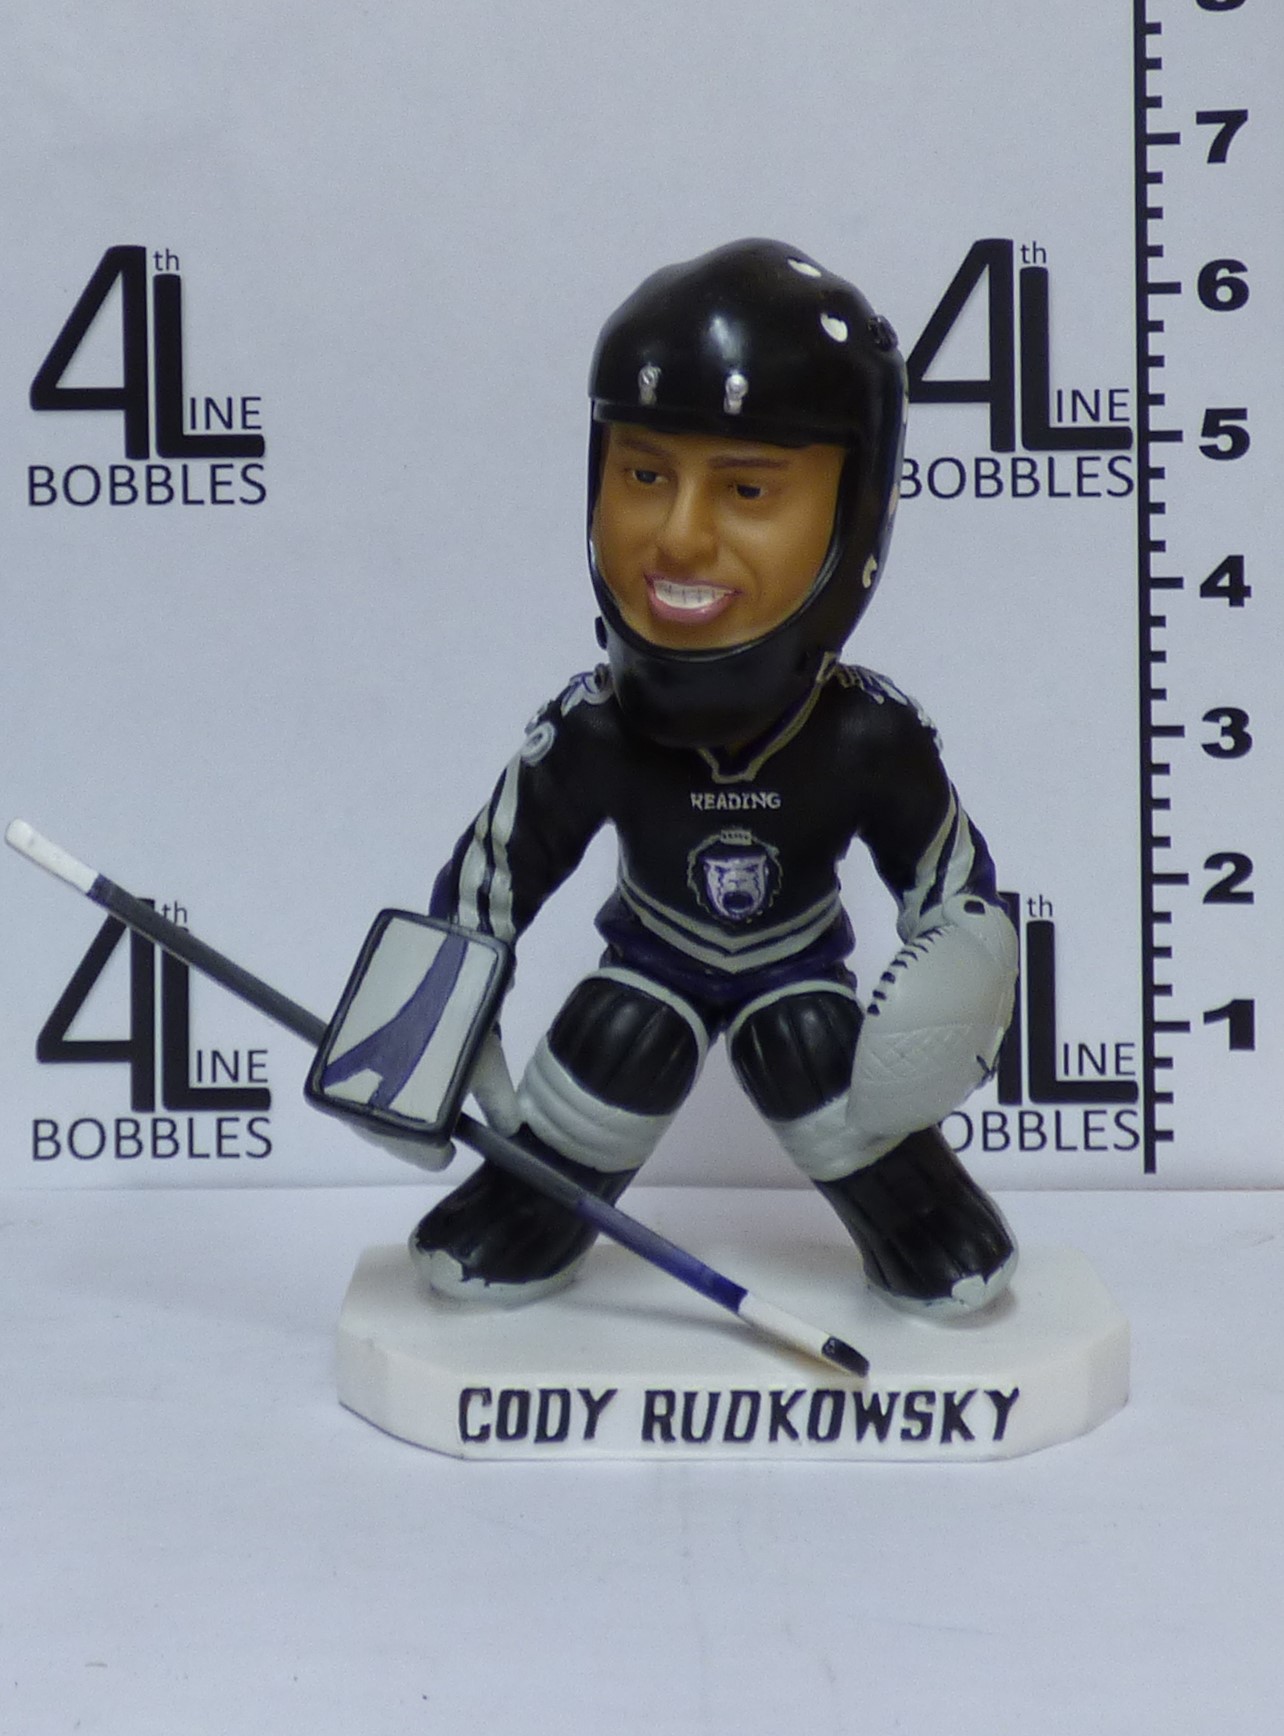 Cody Rudkowsky bobblehead